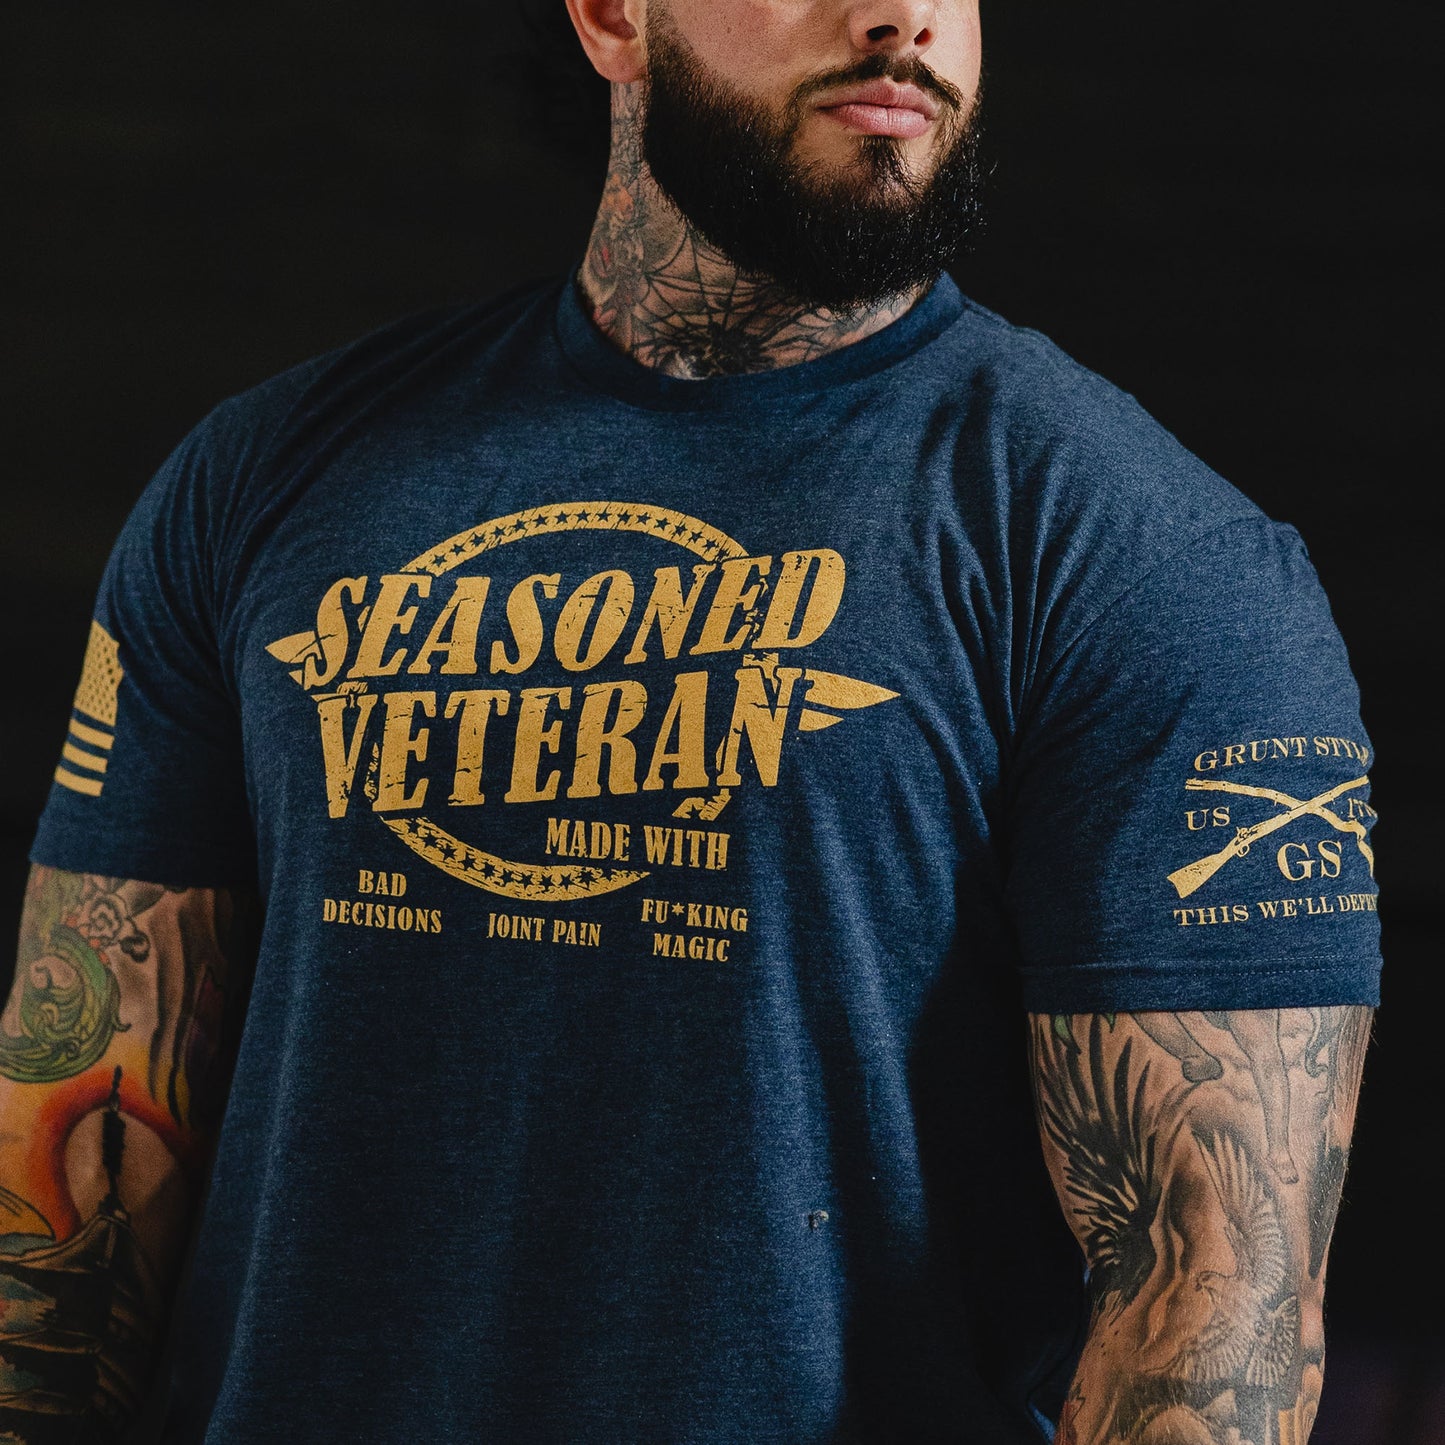 Seasoned Veteran Shirt 